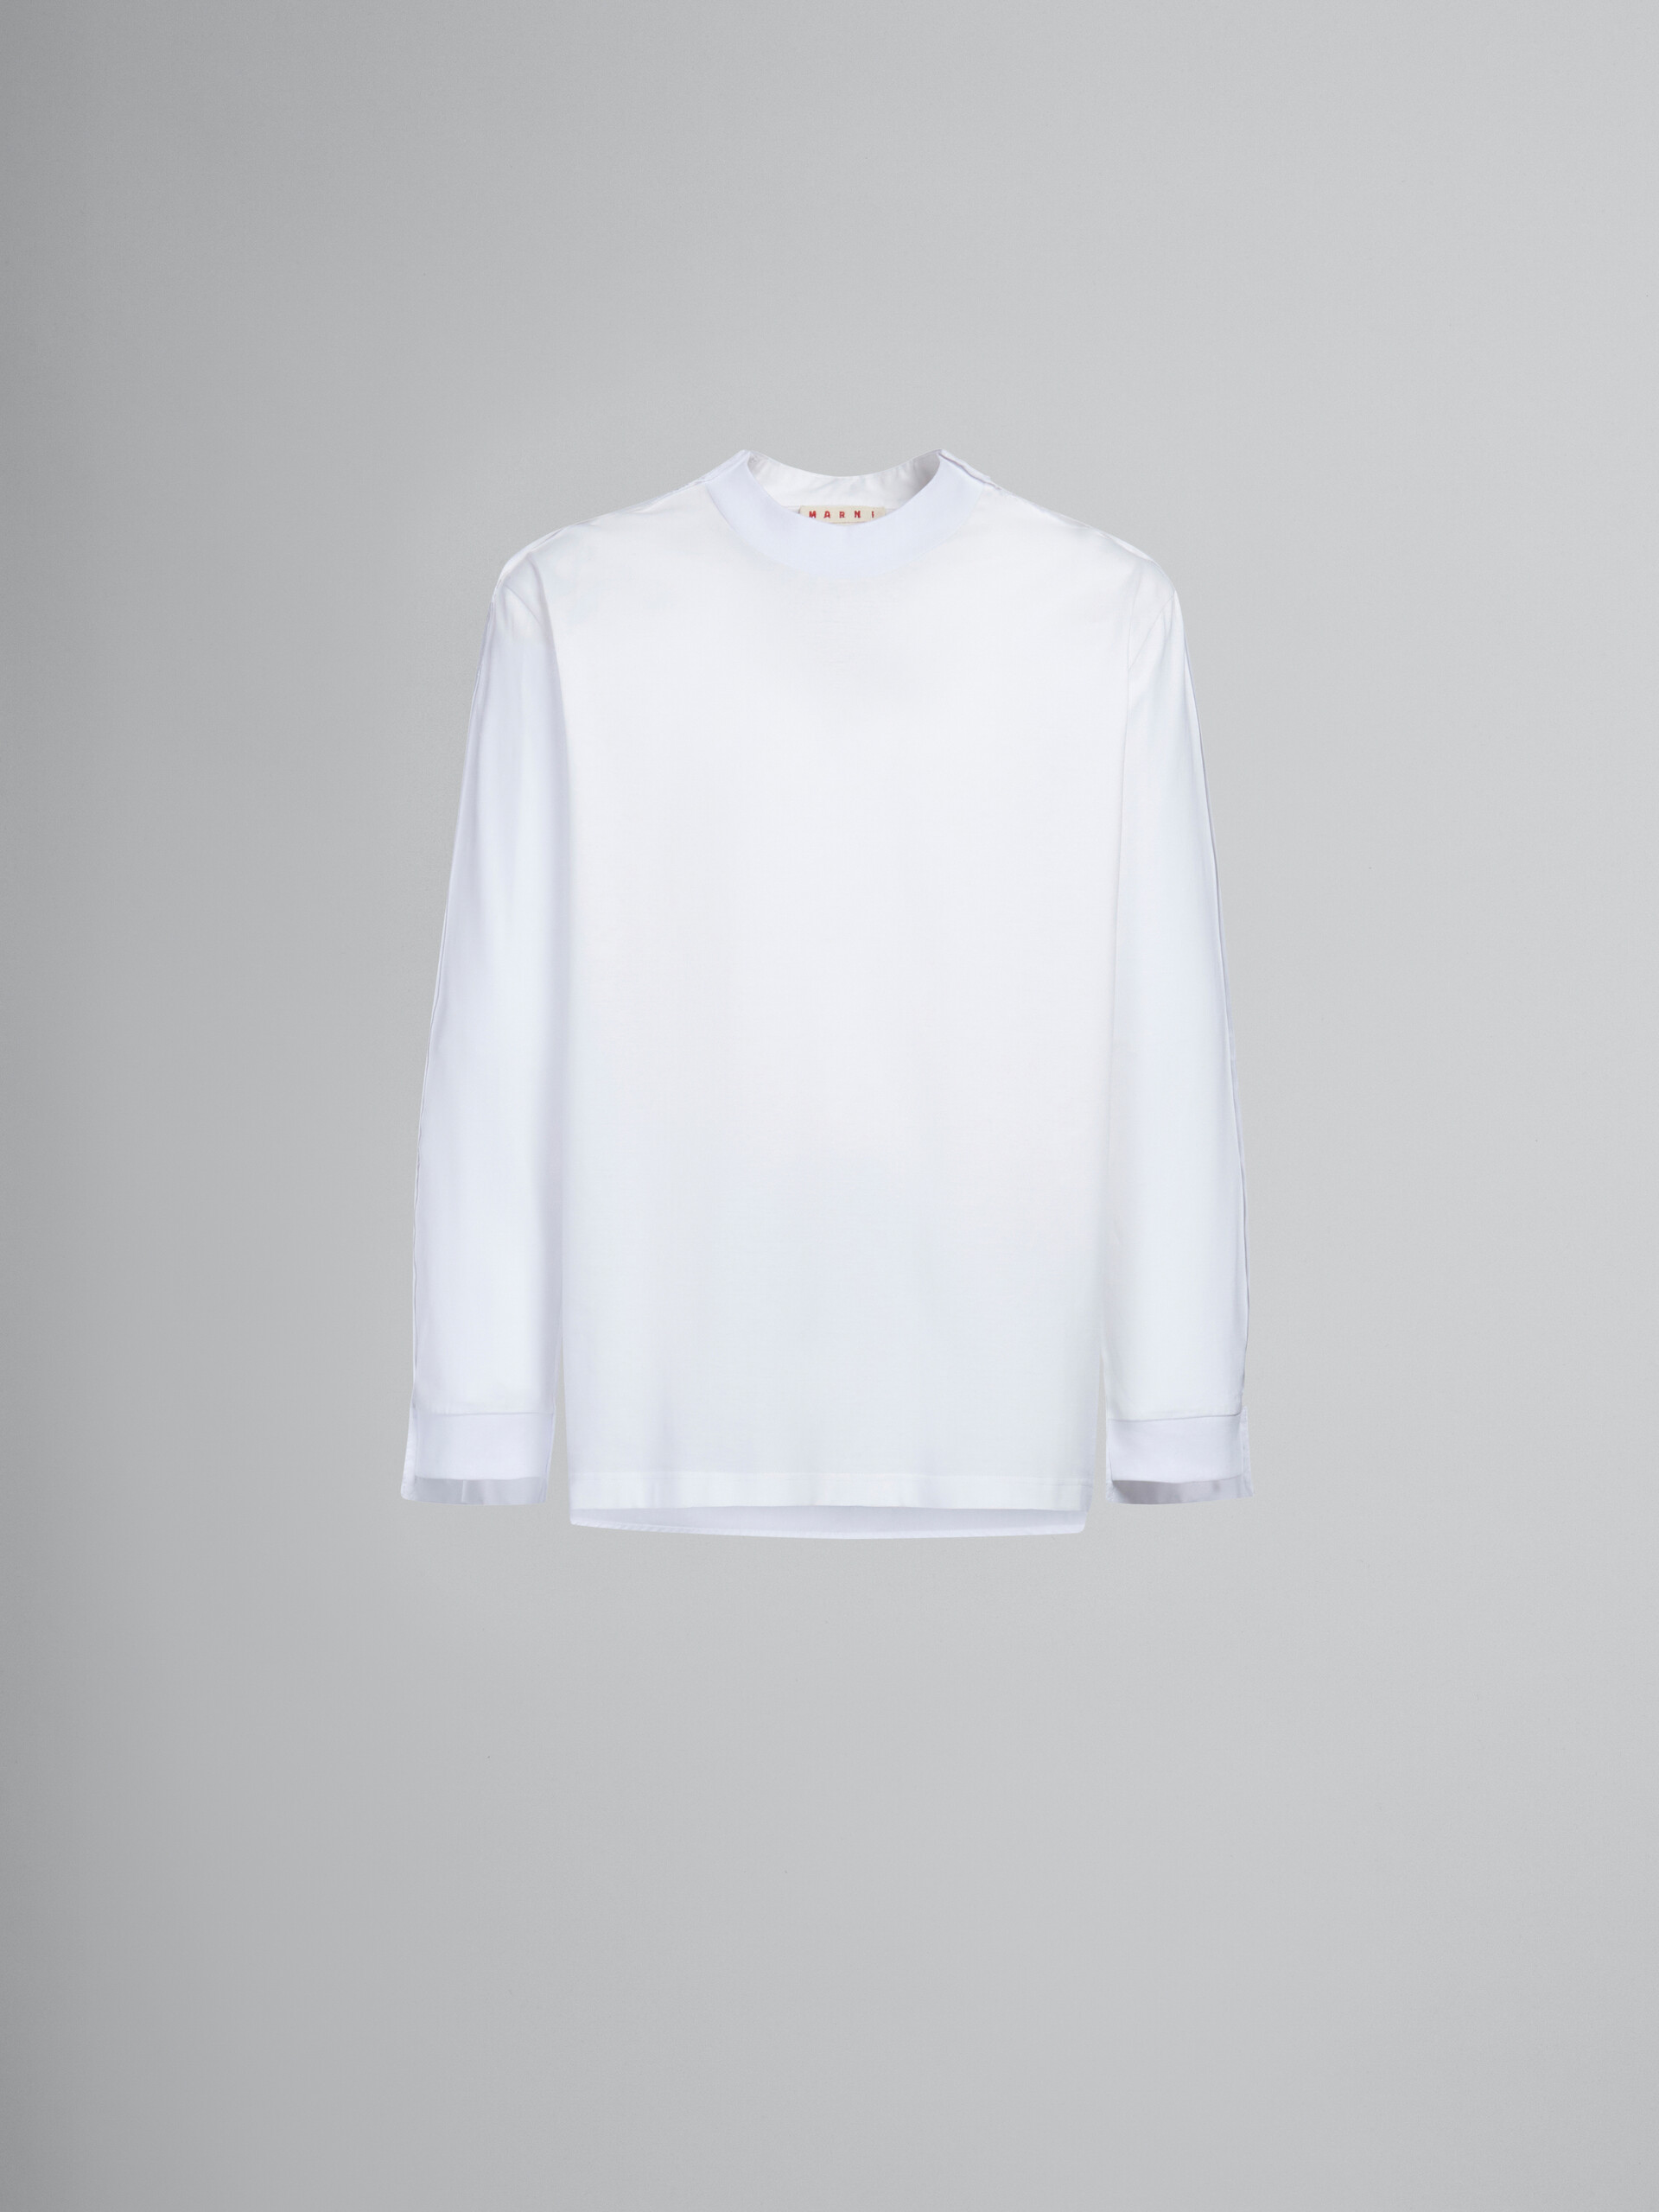 T-shirt à manches longues en coton biologique blanc avec empiècement au dos - T-shirts - Image 1